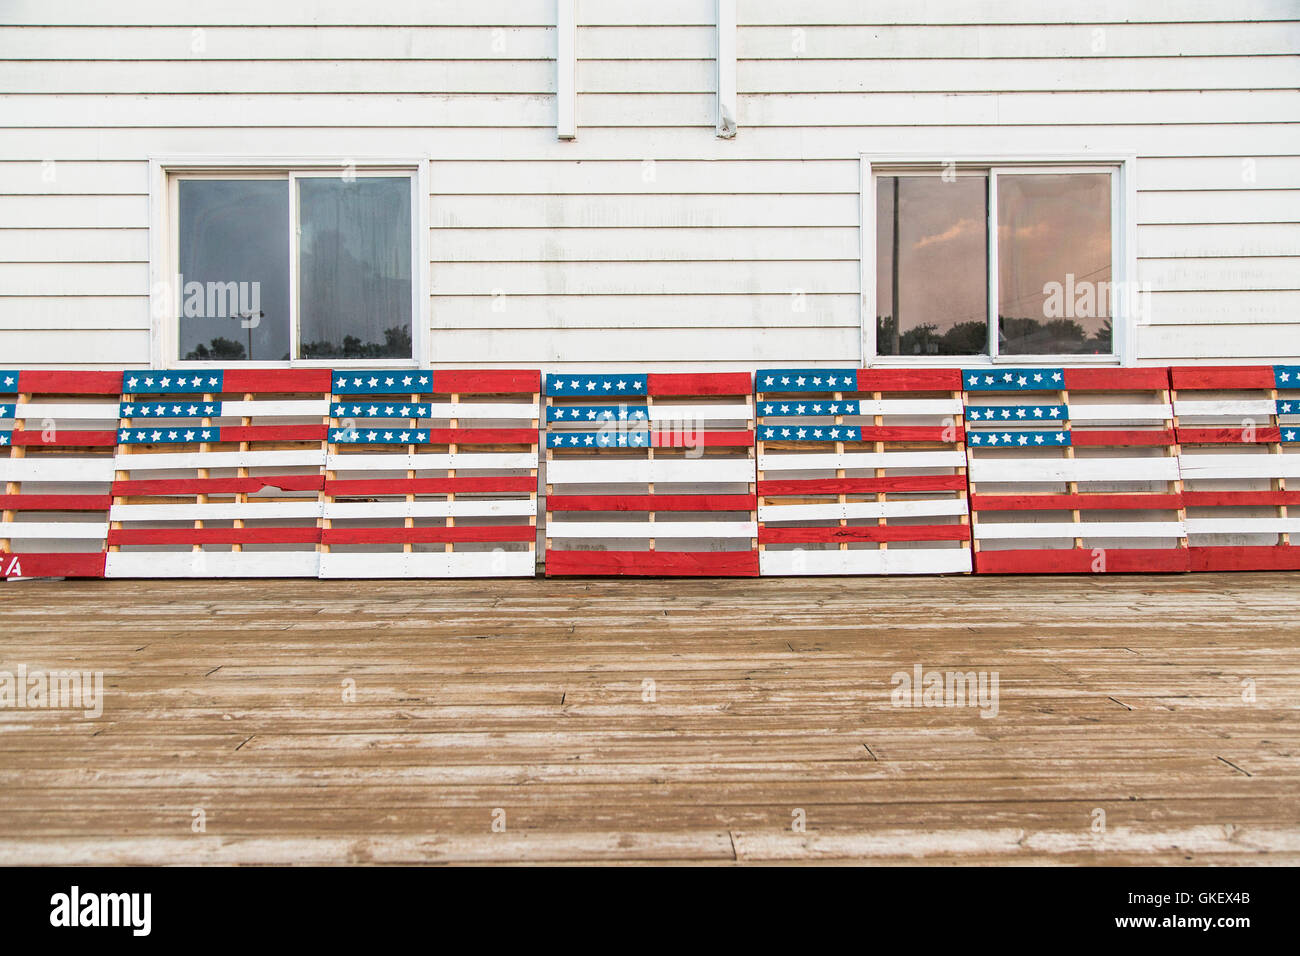 Un display patriottica di pallet in legno dipinto in bandiera americana motivi in rosso, bianco e blu. Foto Stock